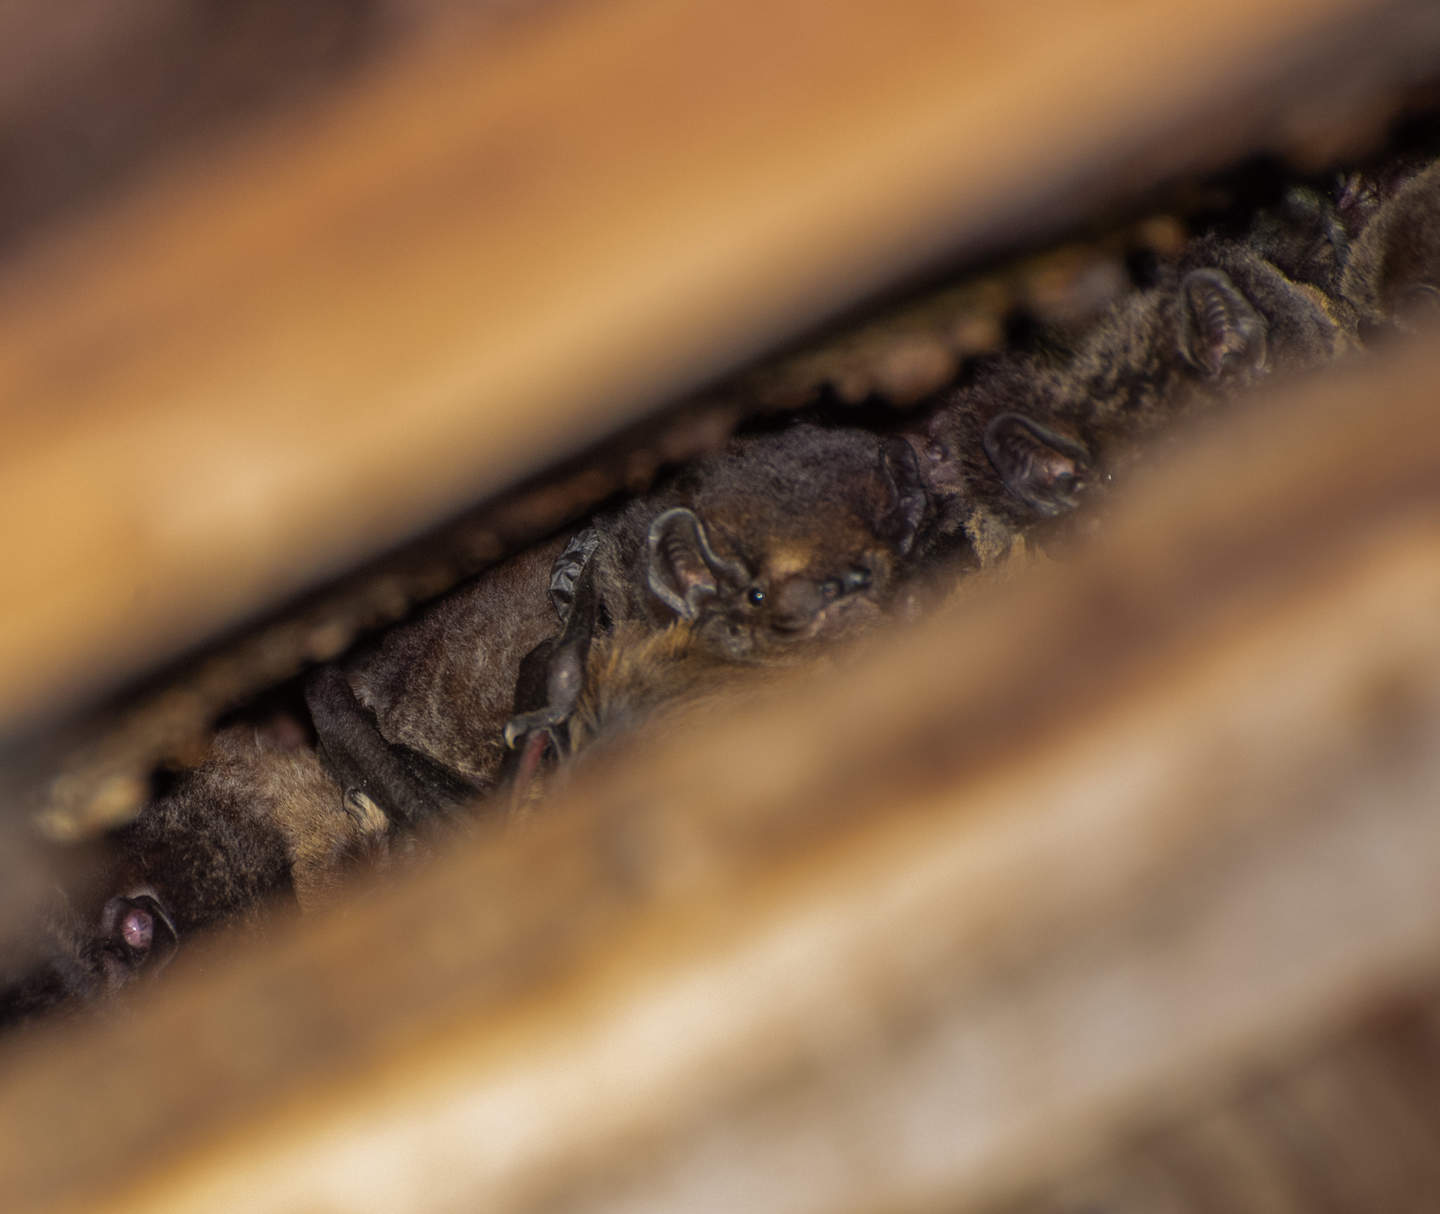 Gould's Wattle Bats enjoying their nest box